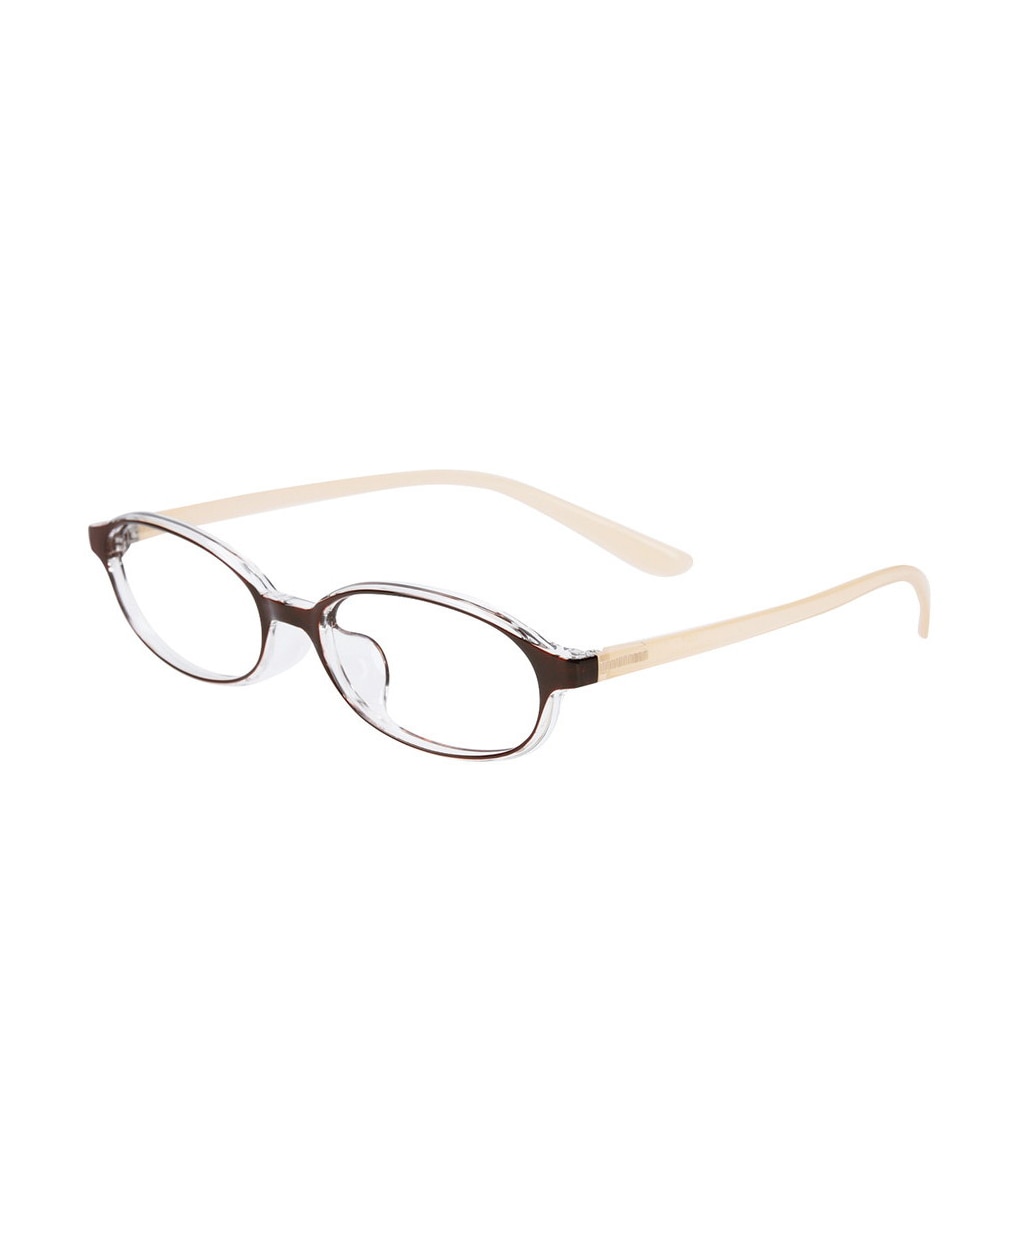 ゾフ +1.50 オーバル型 軽量 老眼鏡リーディンググラス ブラウンZoff